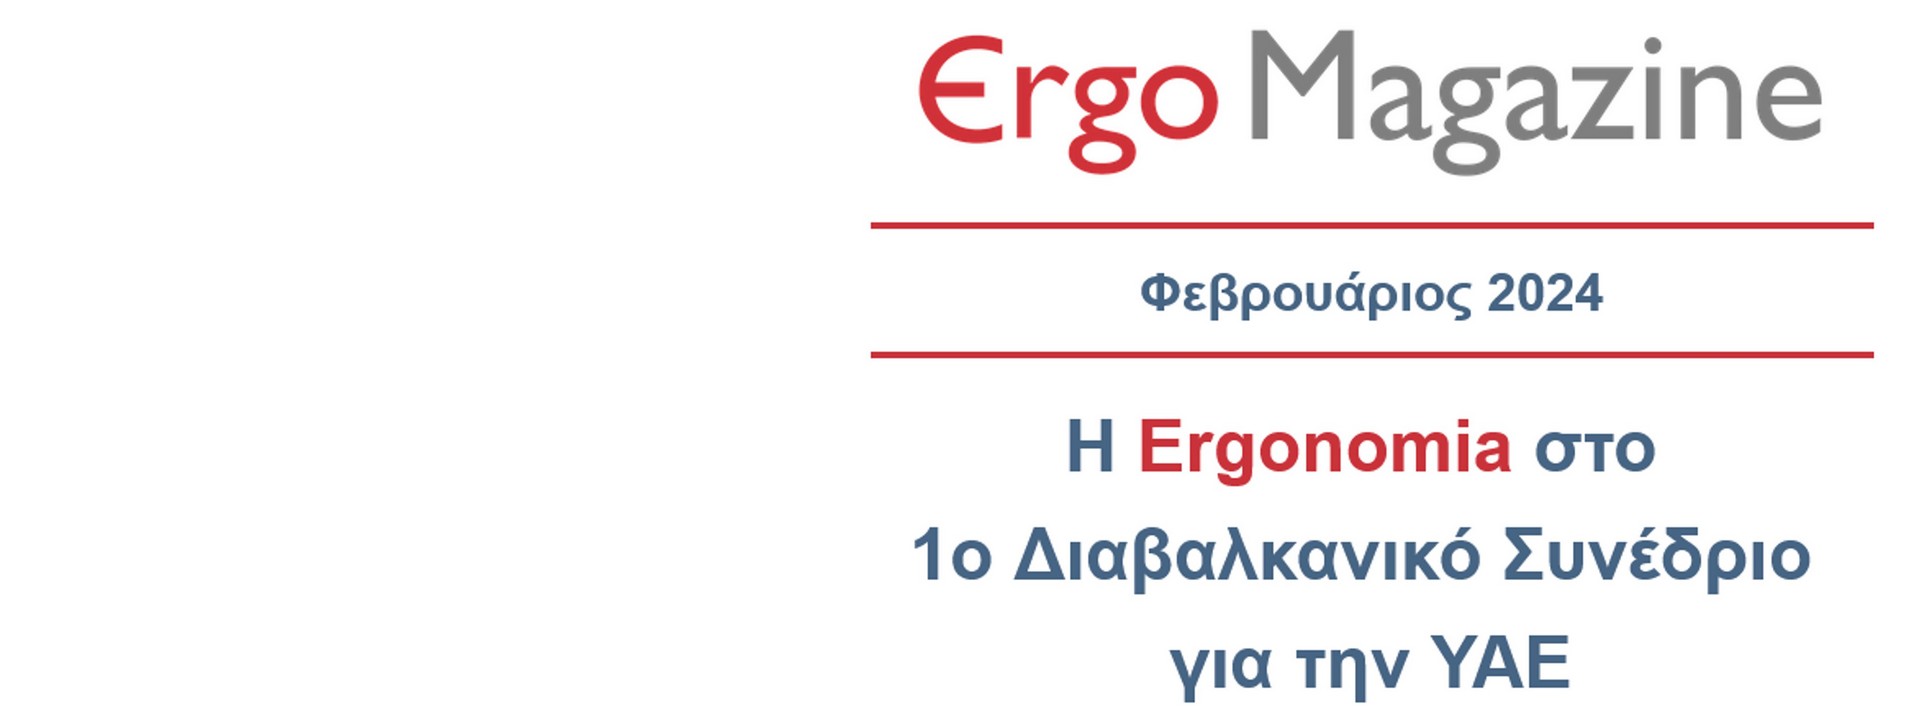 ErgoMagazine Feb 24